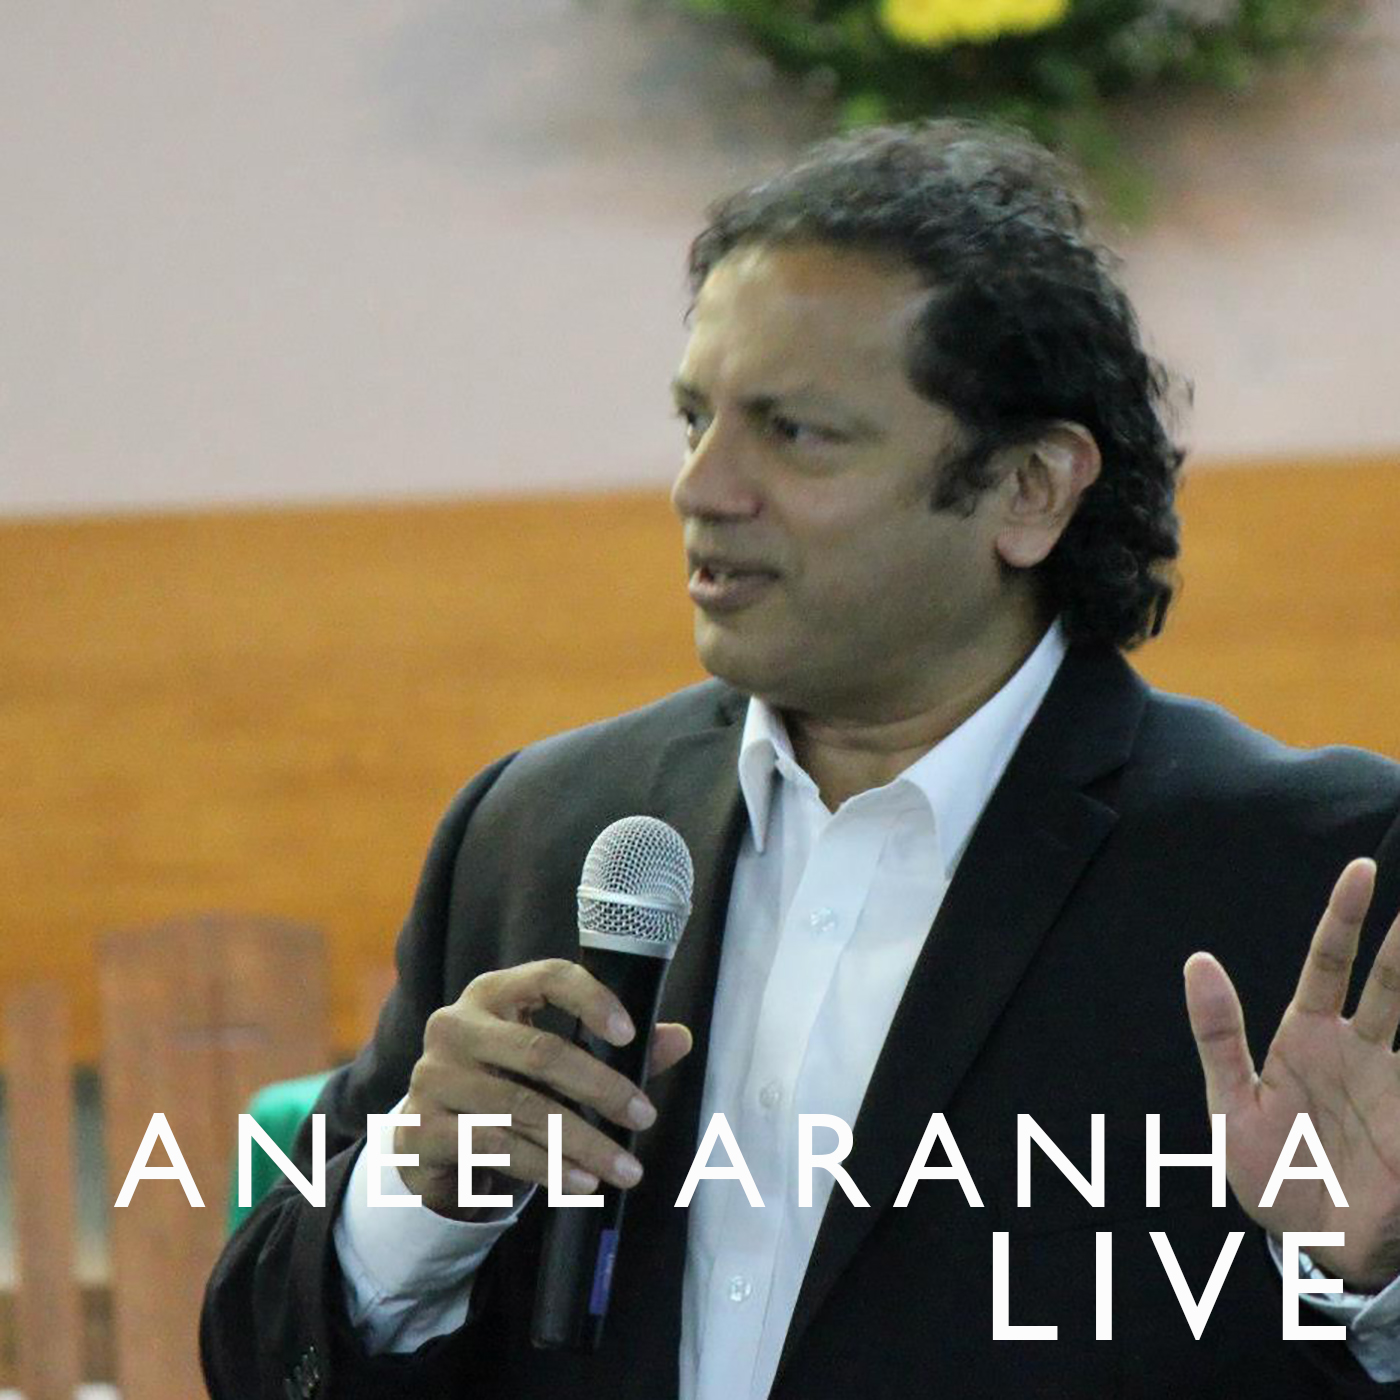 The Verdict - Aneel Aranha